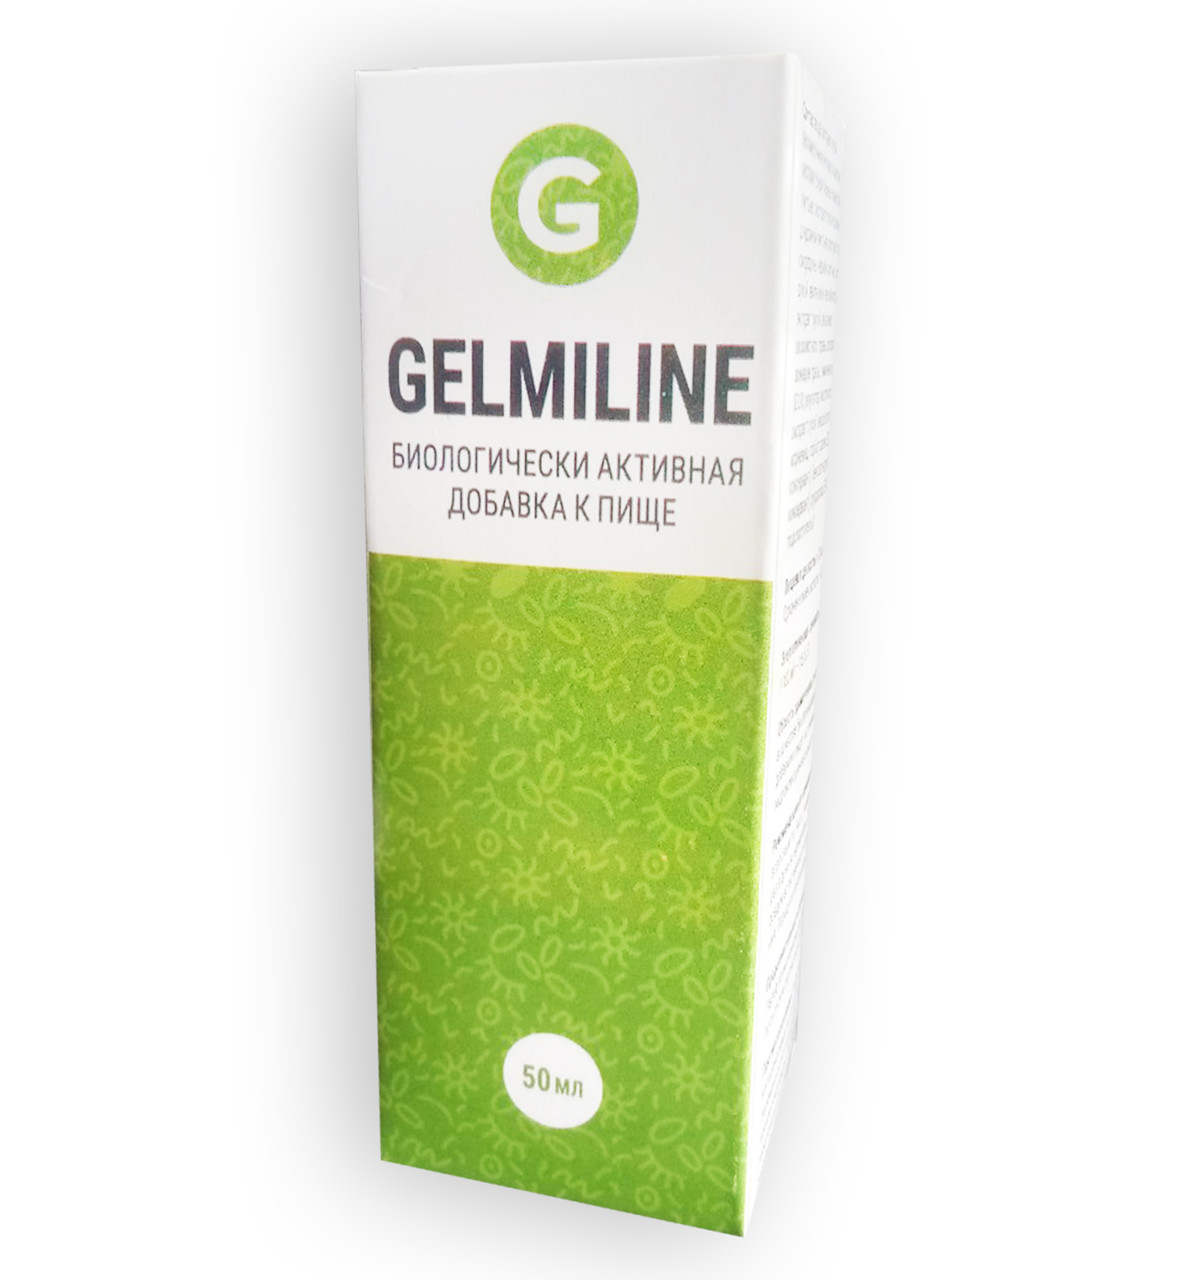 Gelmiline - Фитокомплекс від паразитів (Гельмілайн), Позбавляє і протидіє паразитам в майбутньому